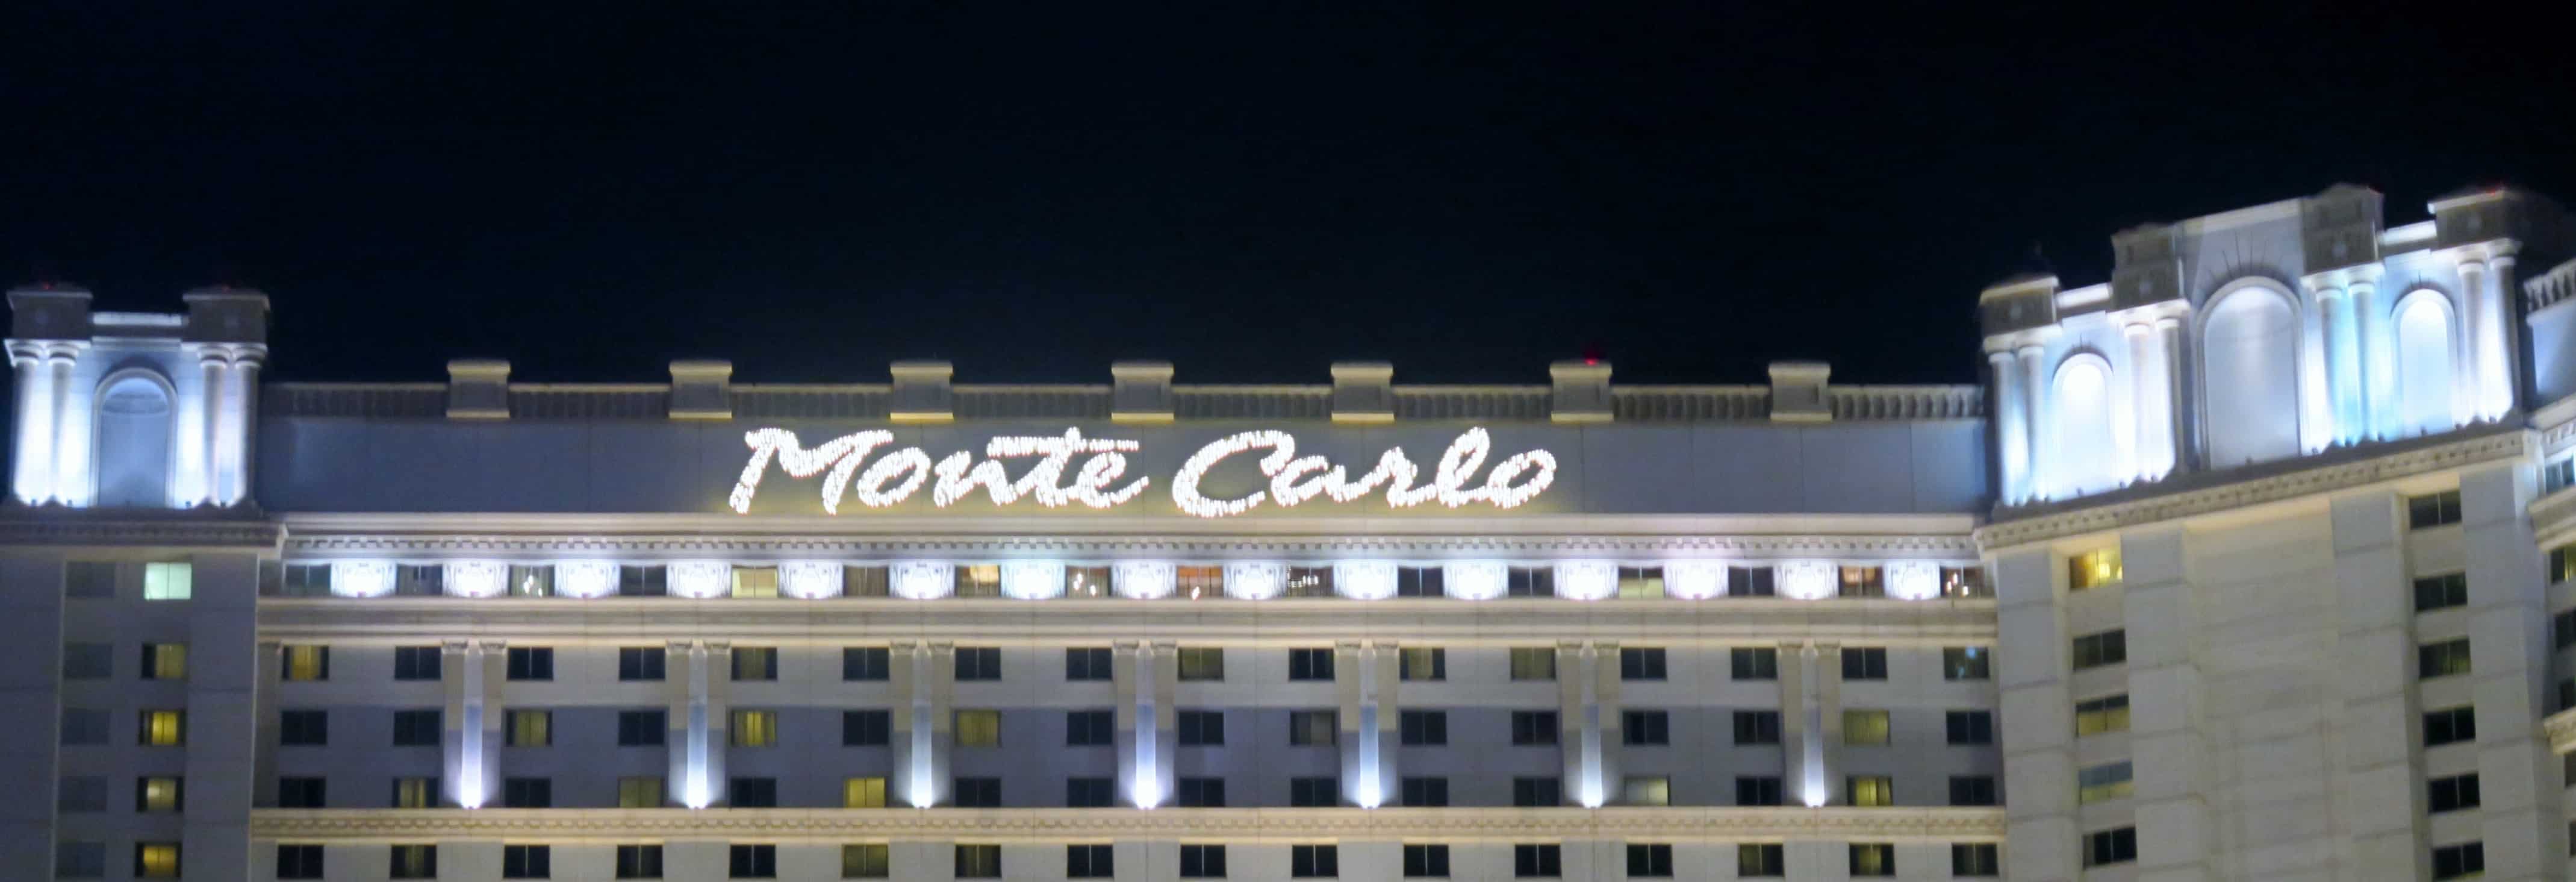 The Monte Carlo